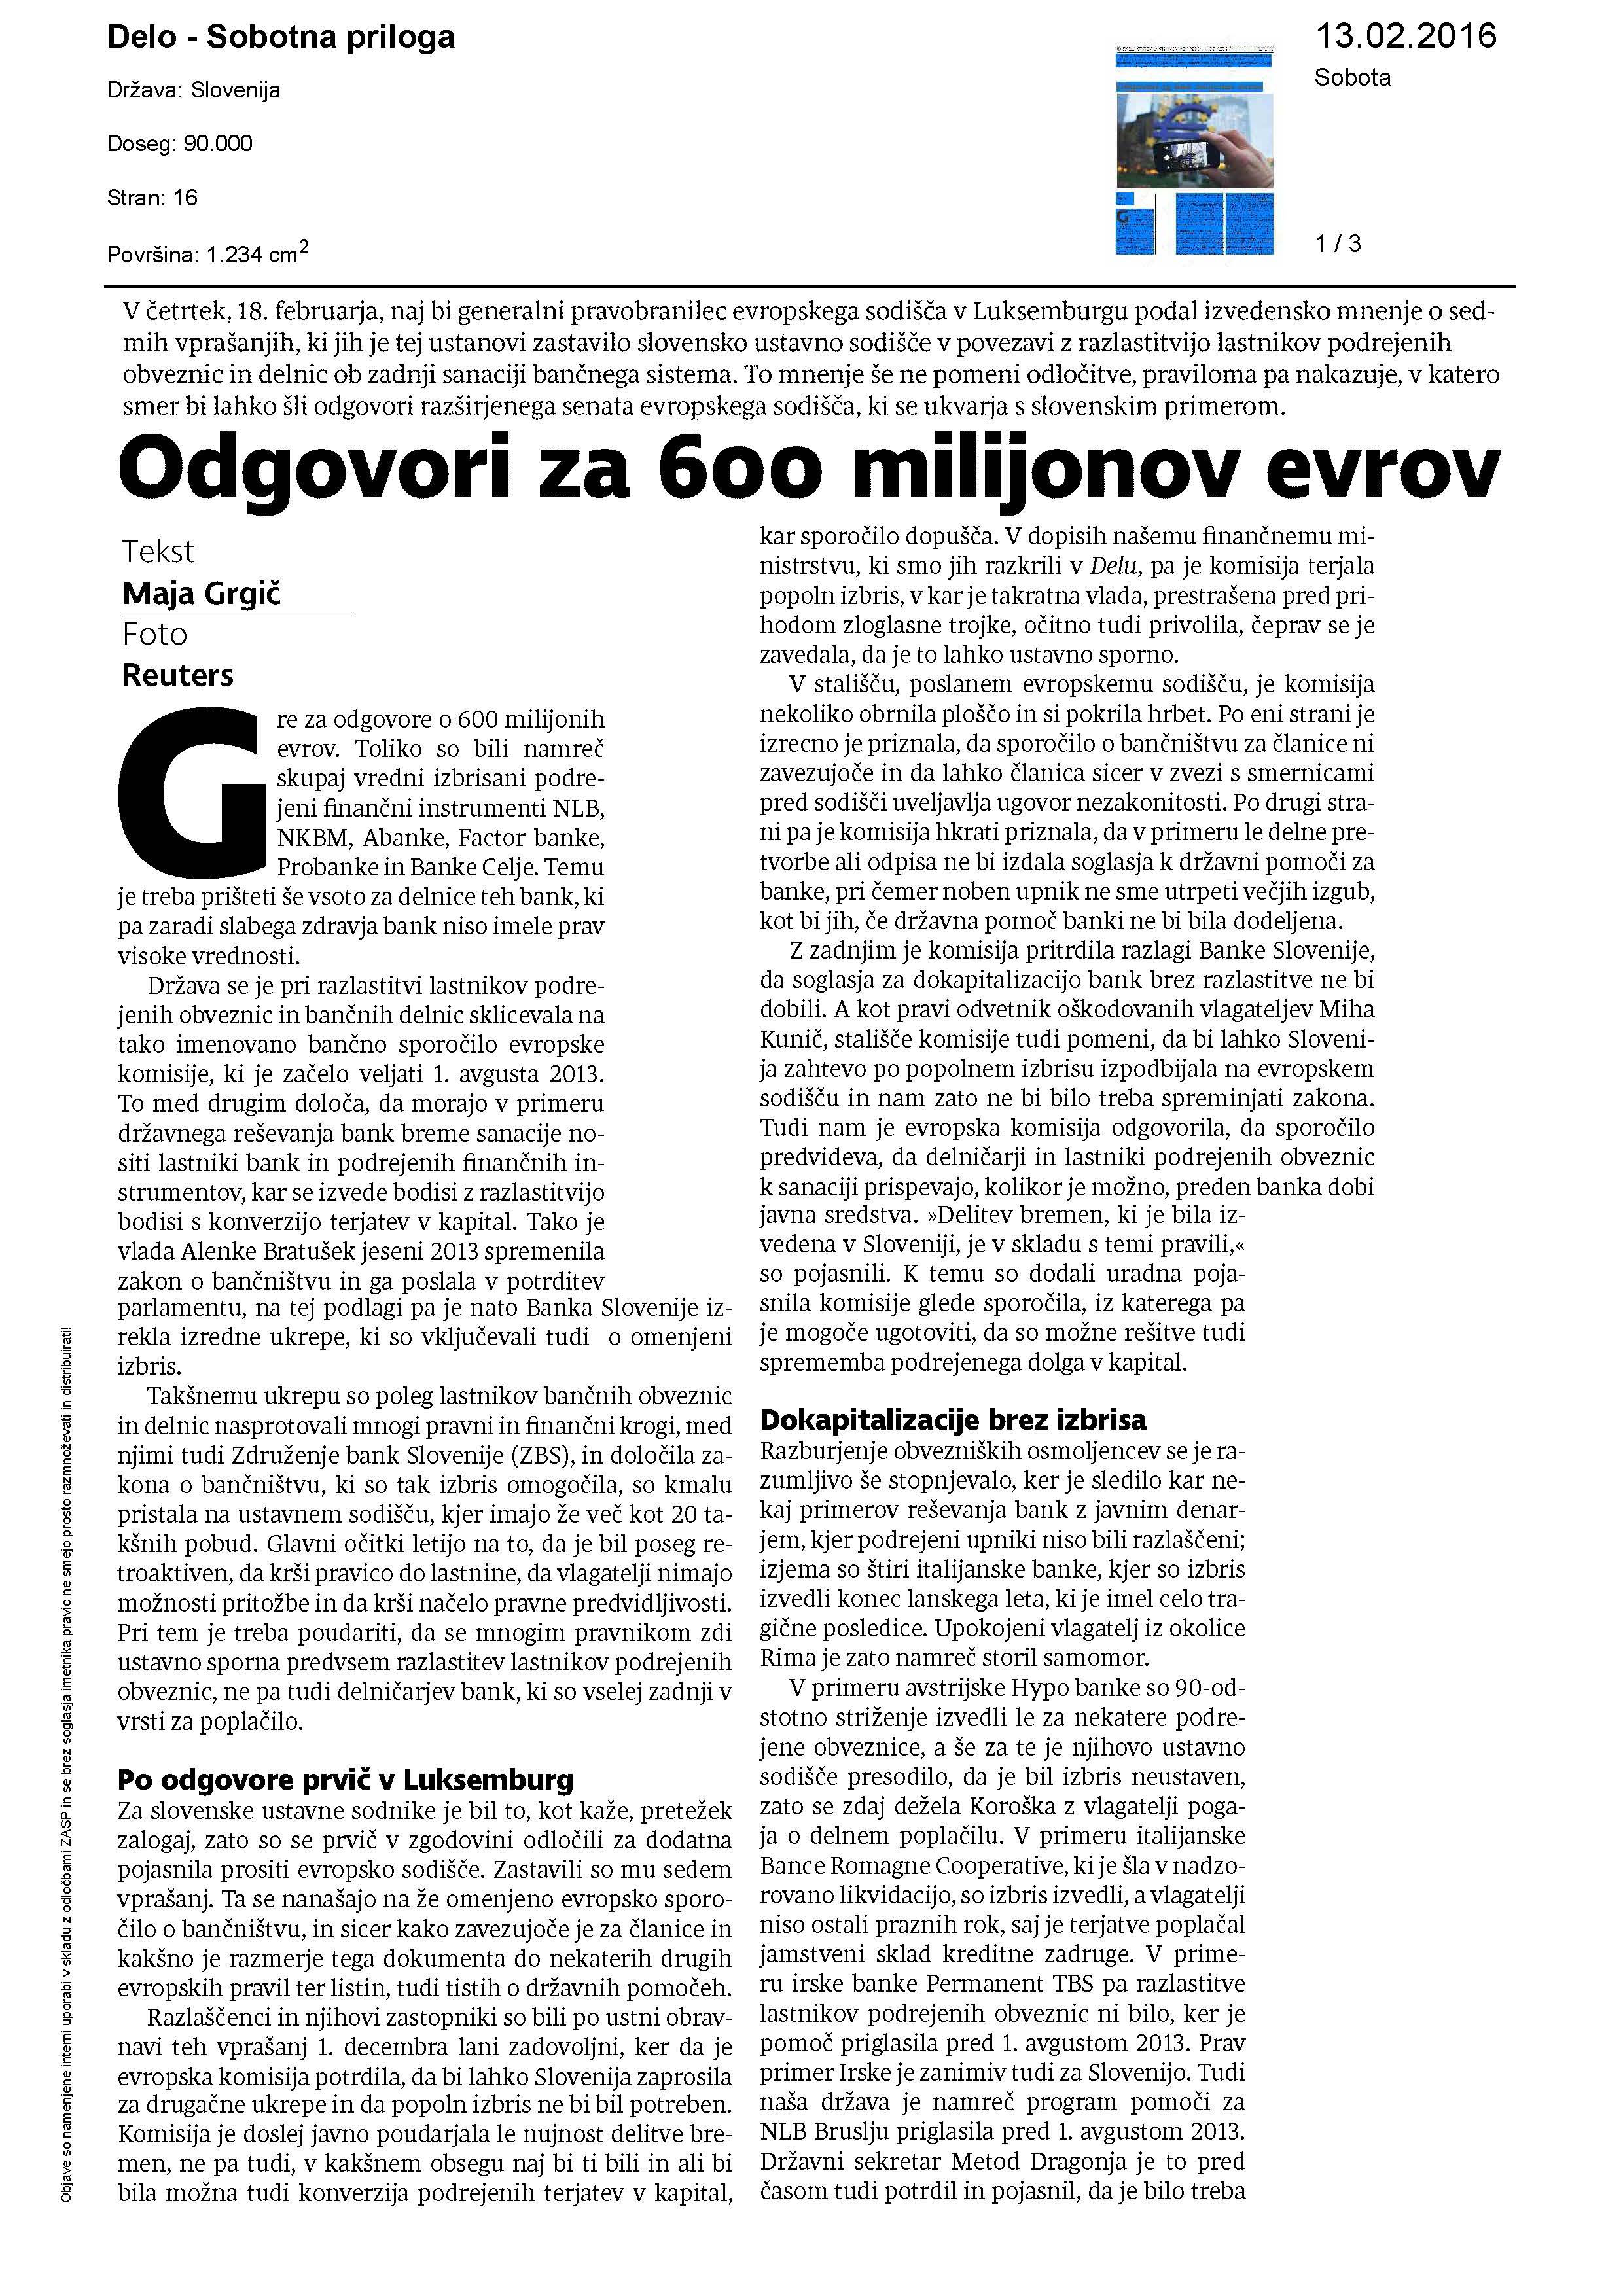 Odgovori za 600 milijonov evrov Page 1